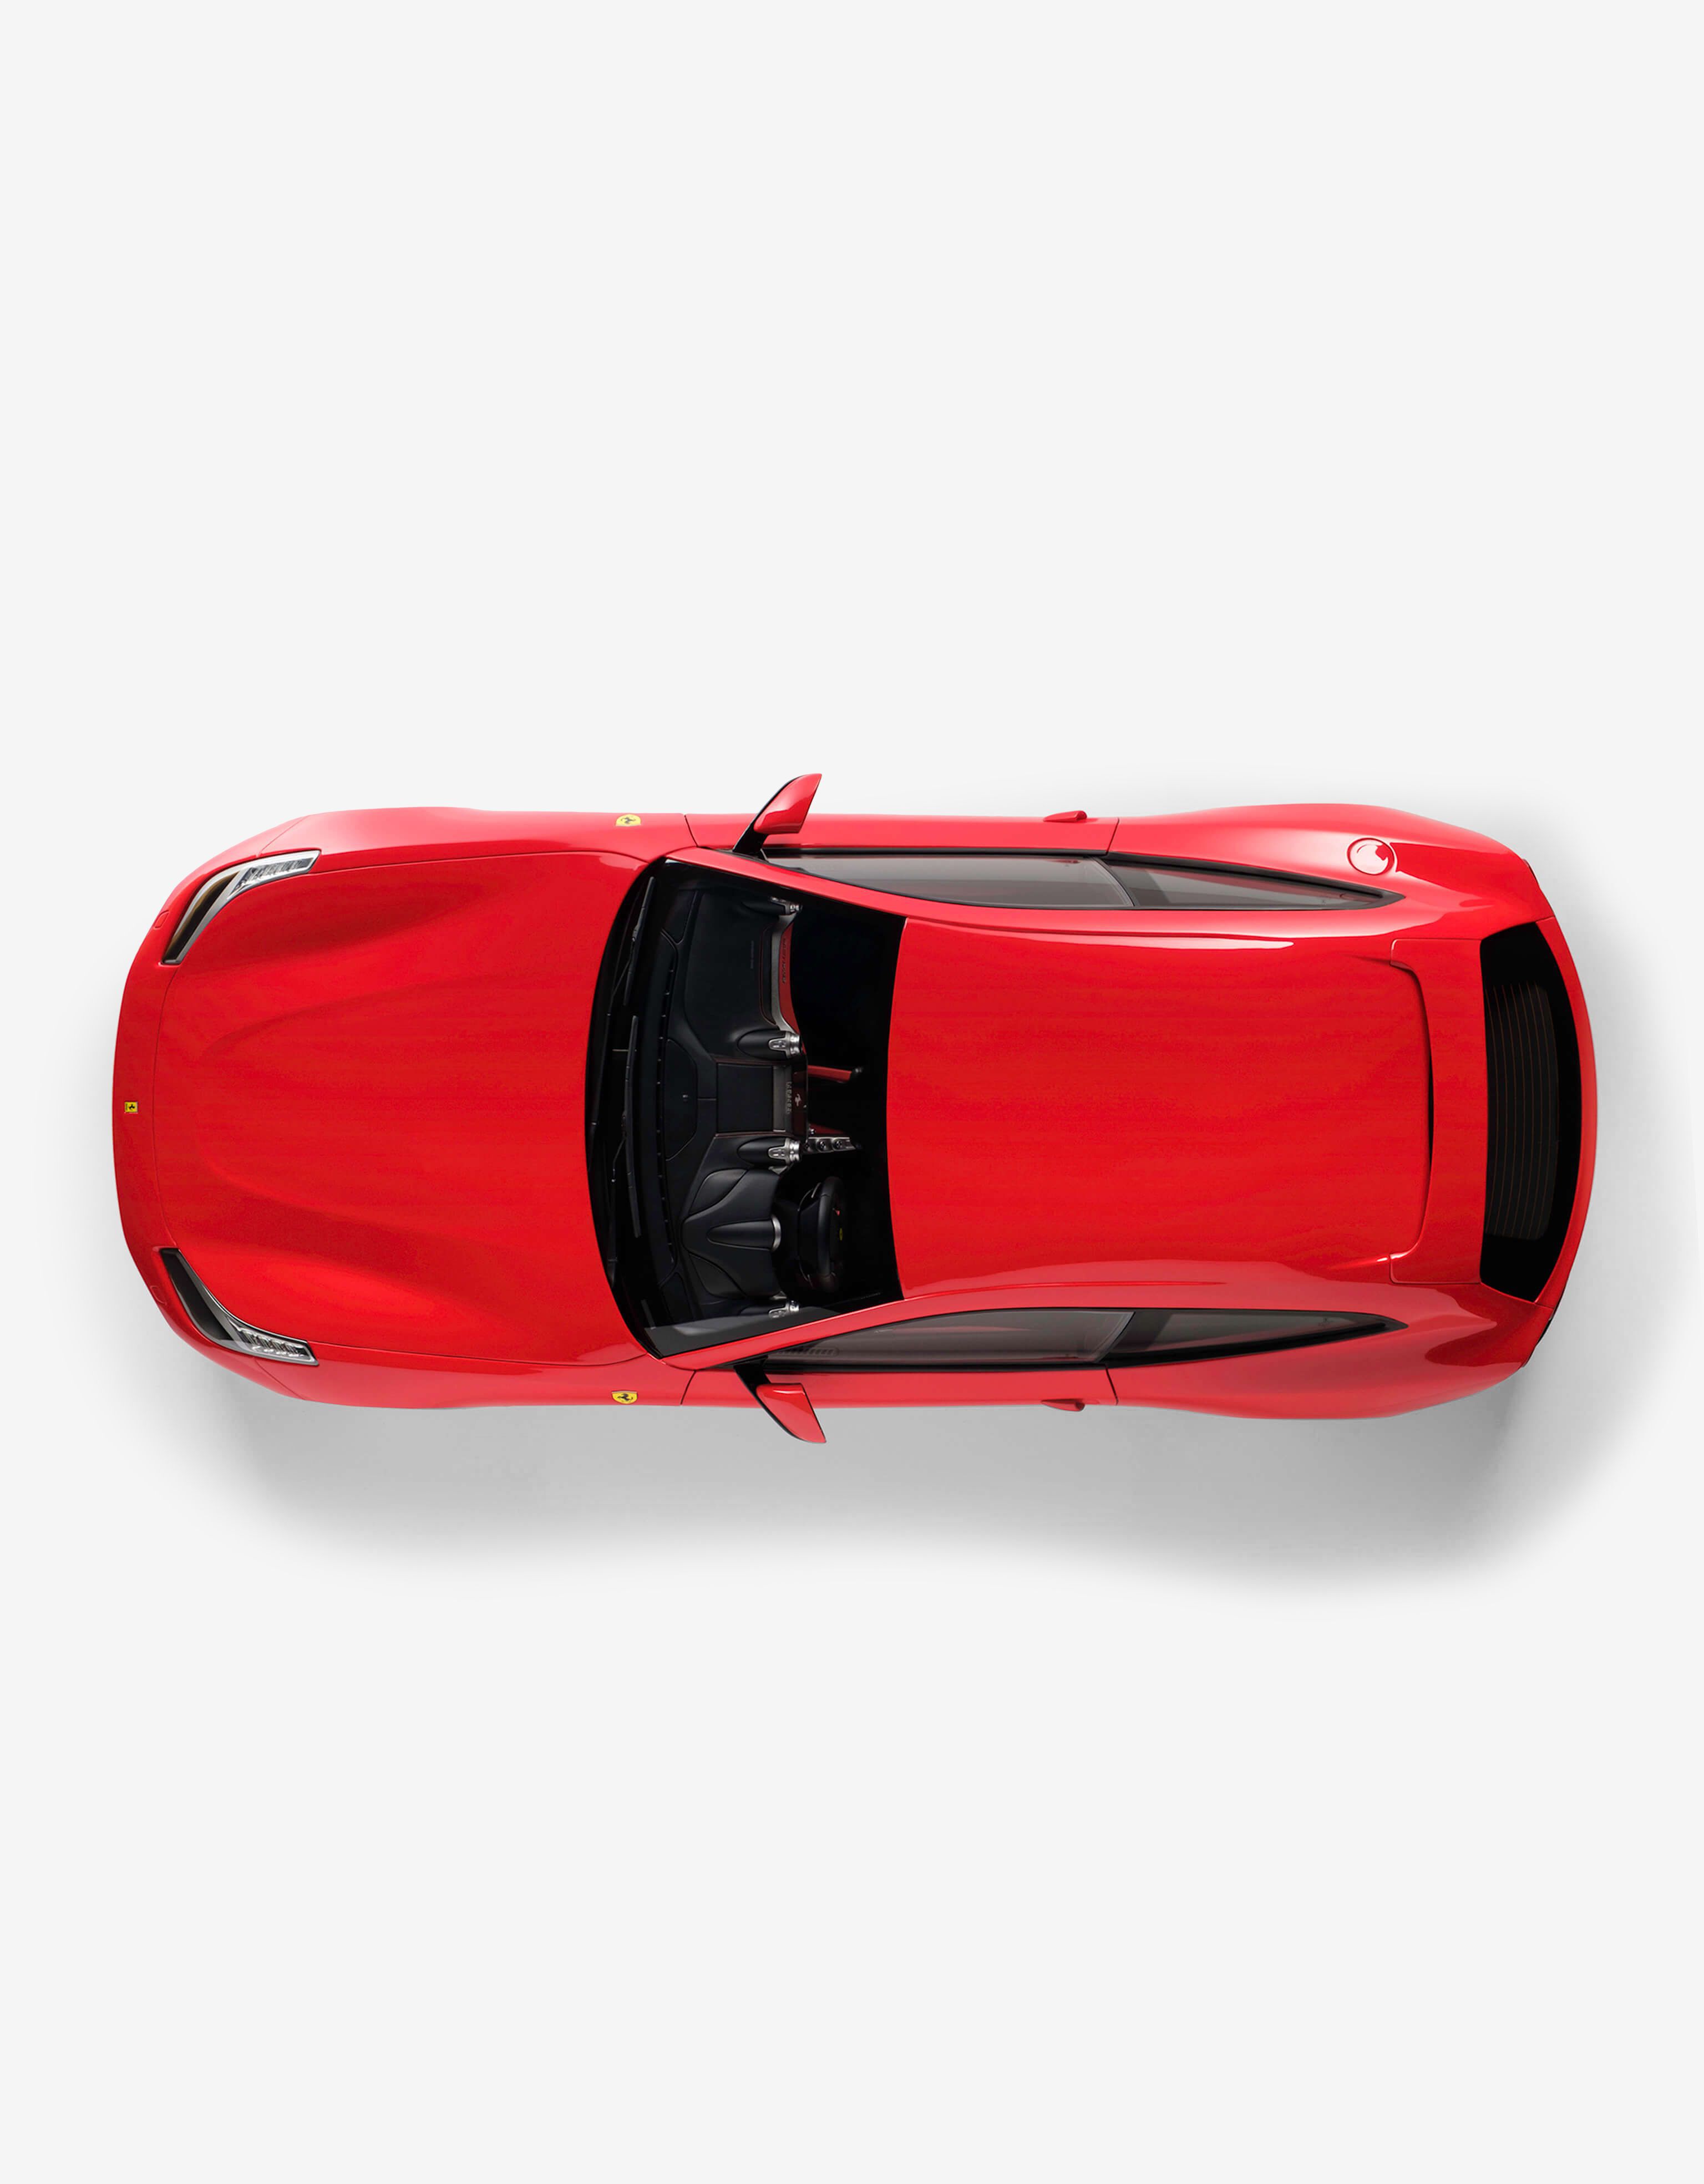 Ferrari Ferrari GTC4 Lusso model in 1:8 scale 红色 L7599f